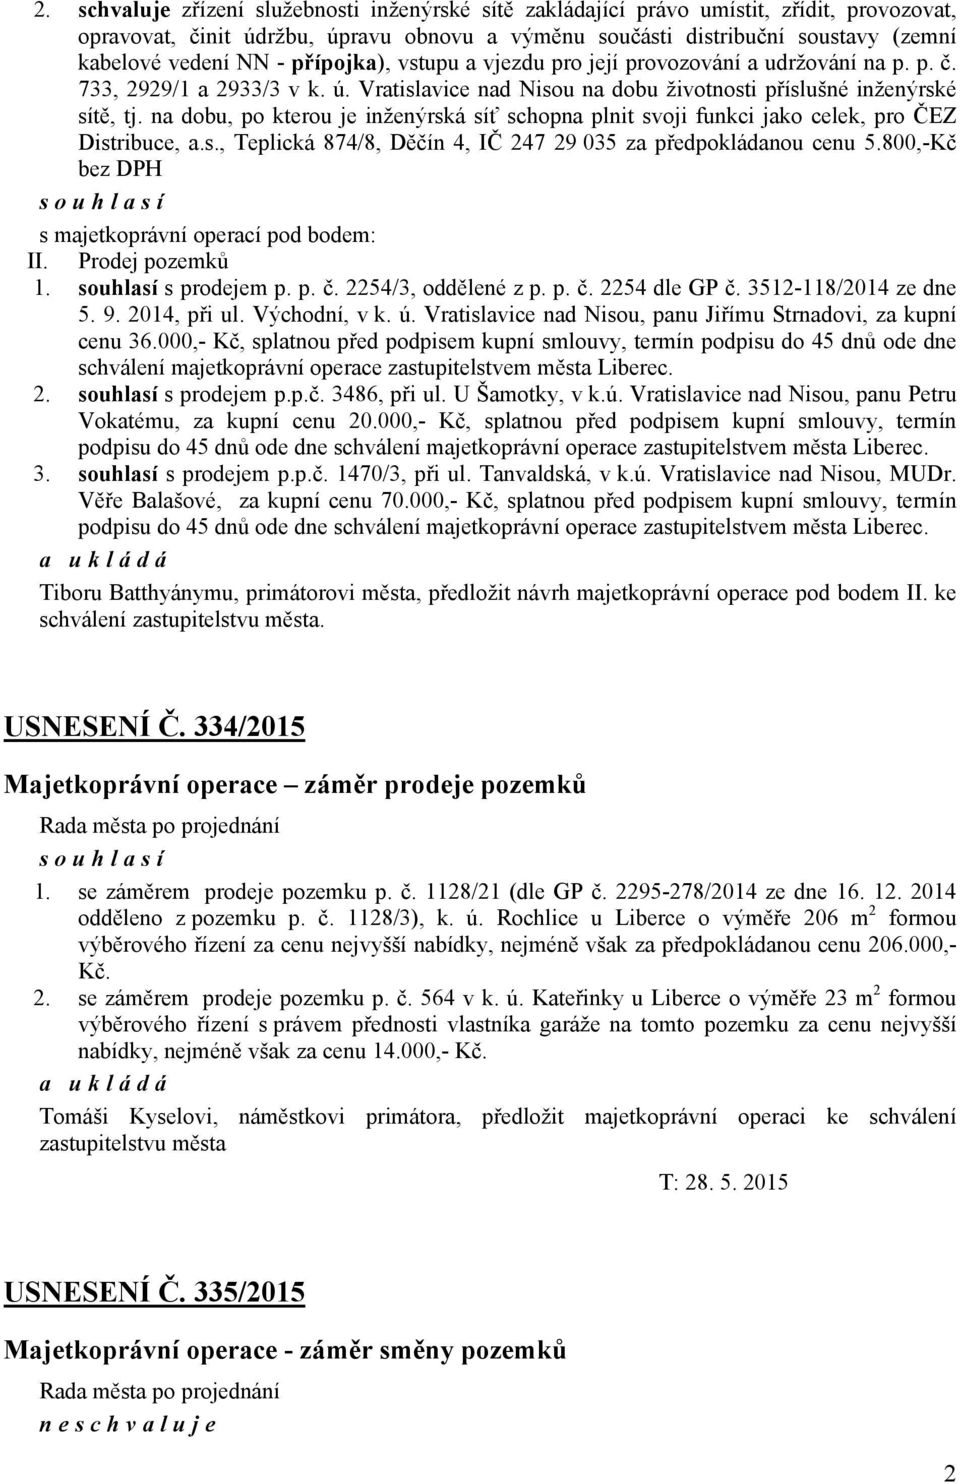 na dobu, po kterou je inženýrská síť schopna plnit svoji funkci jako celek, pro ČEZ Distribuce, a.s., Teplická 874/8, Děčín 4, IČ 247 29 035 za předpokládanou cenu 5.